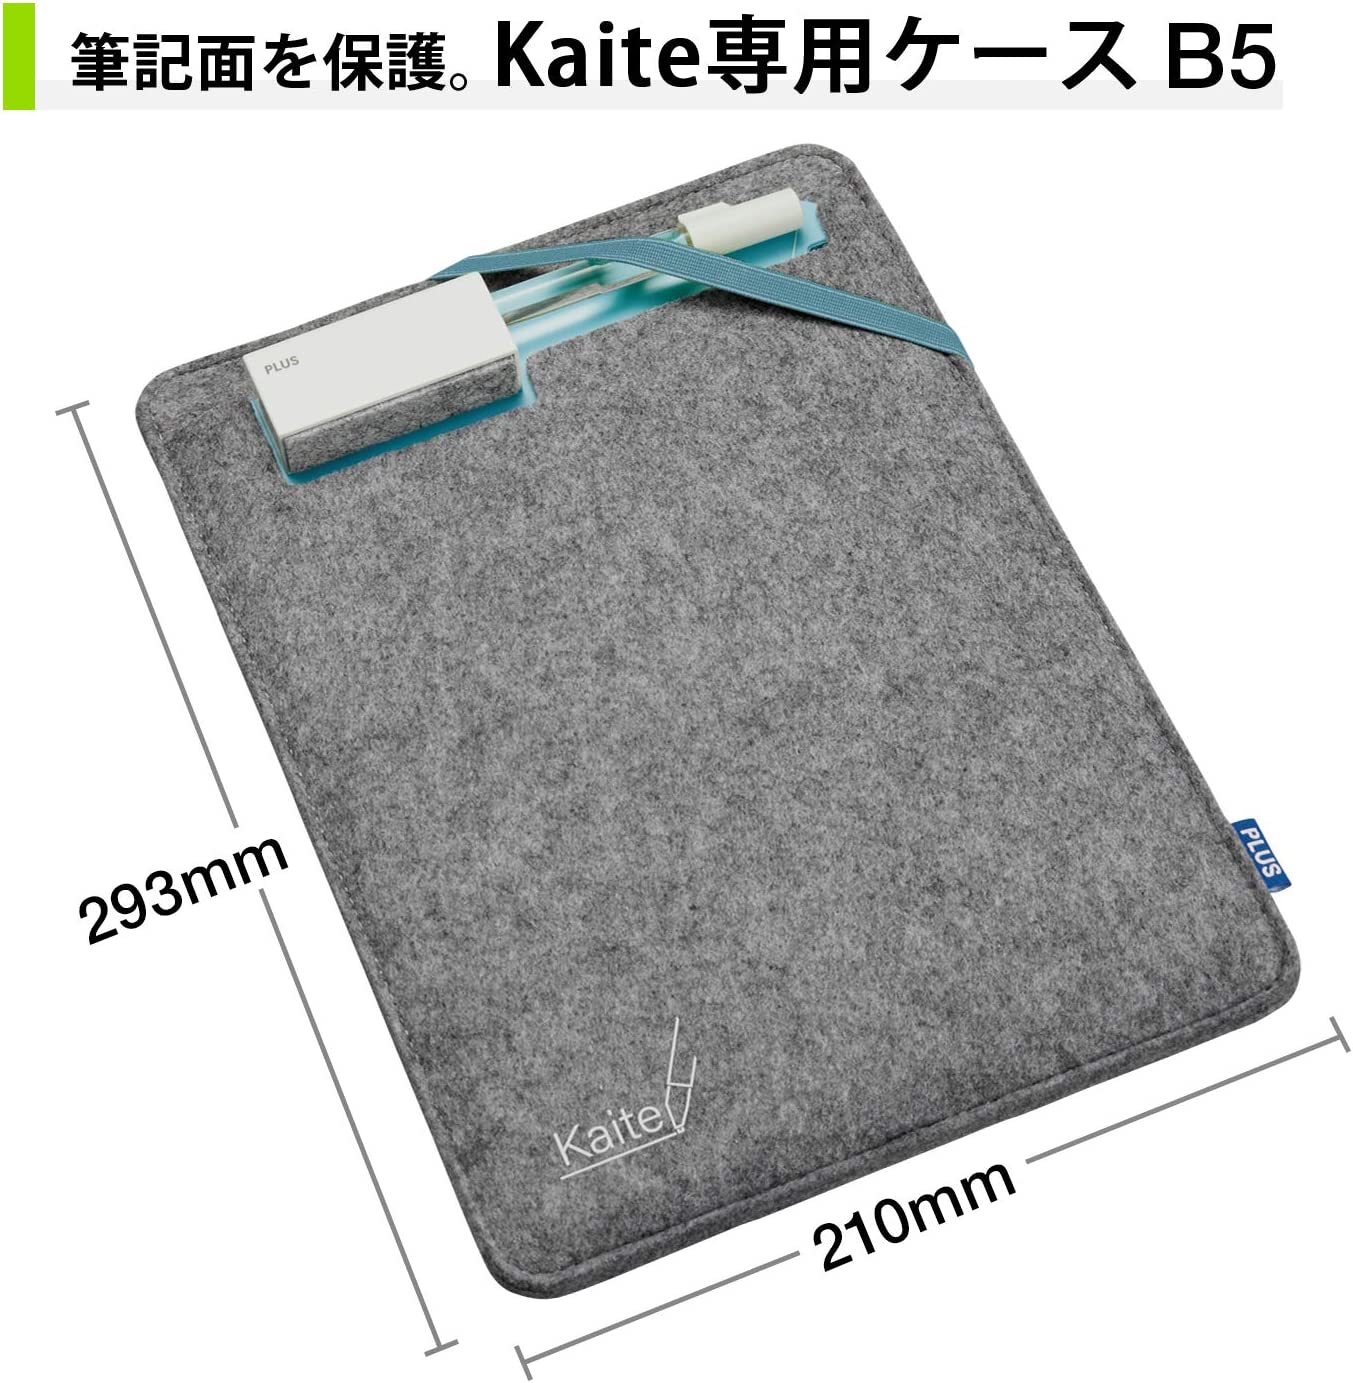 Kaite 2S A5 10.3 inch Case